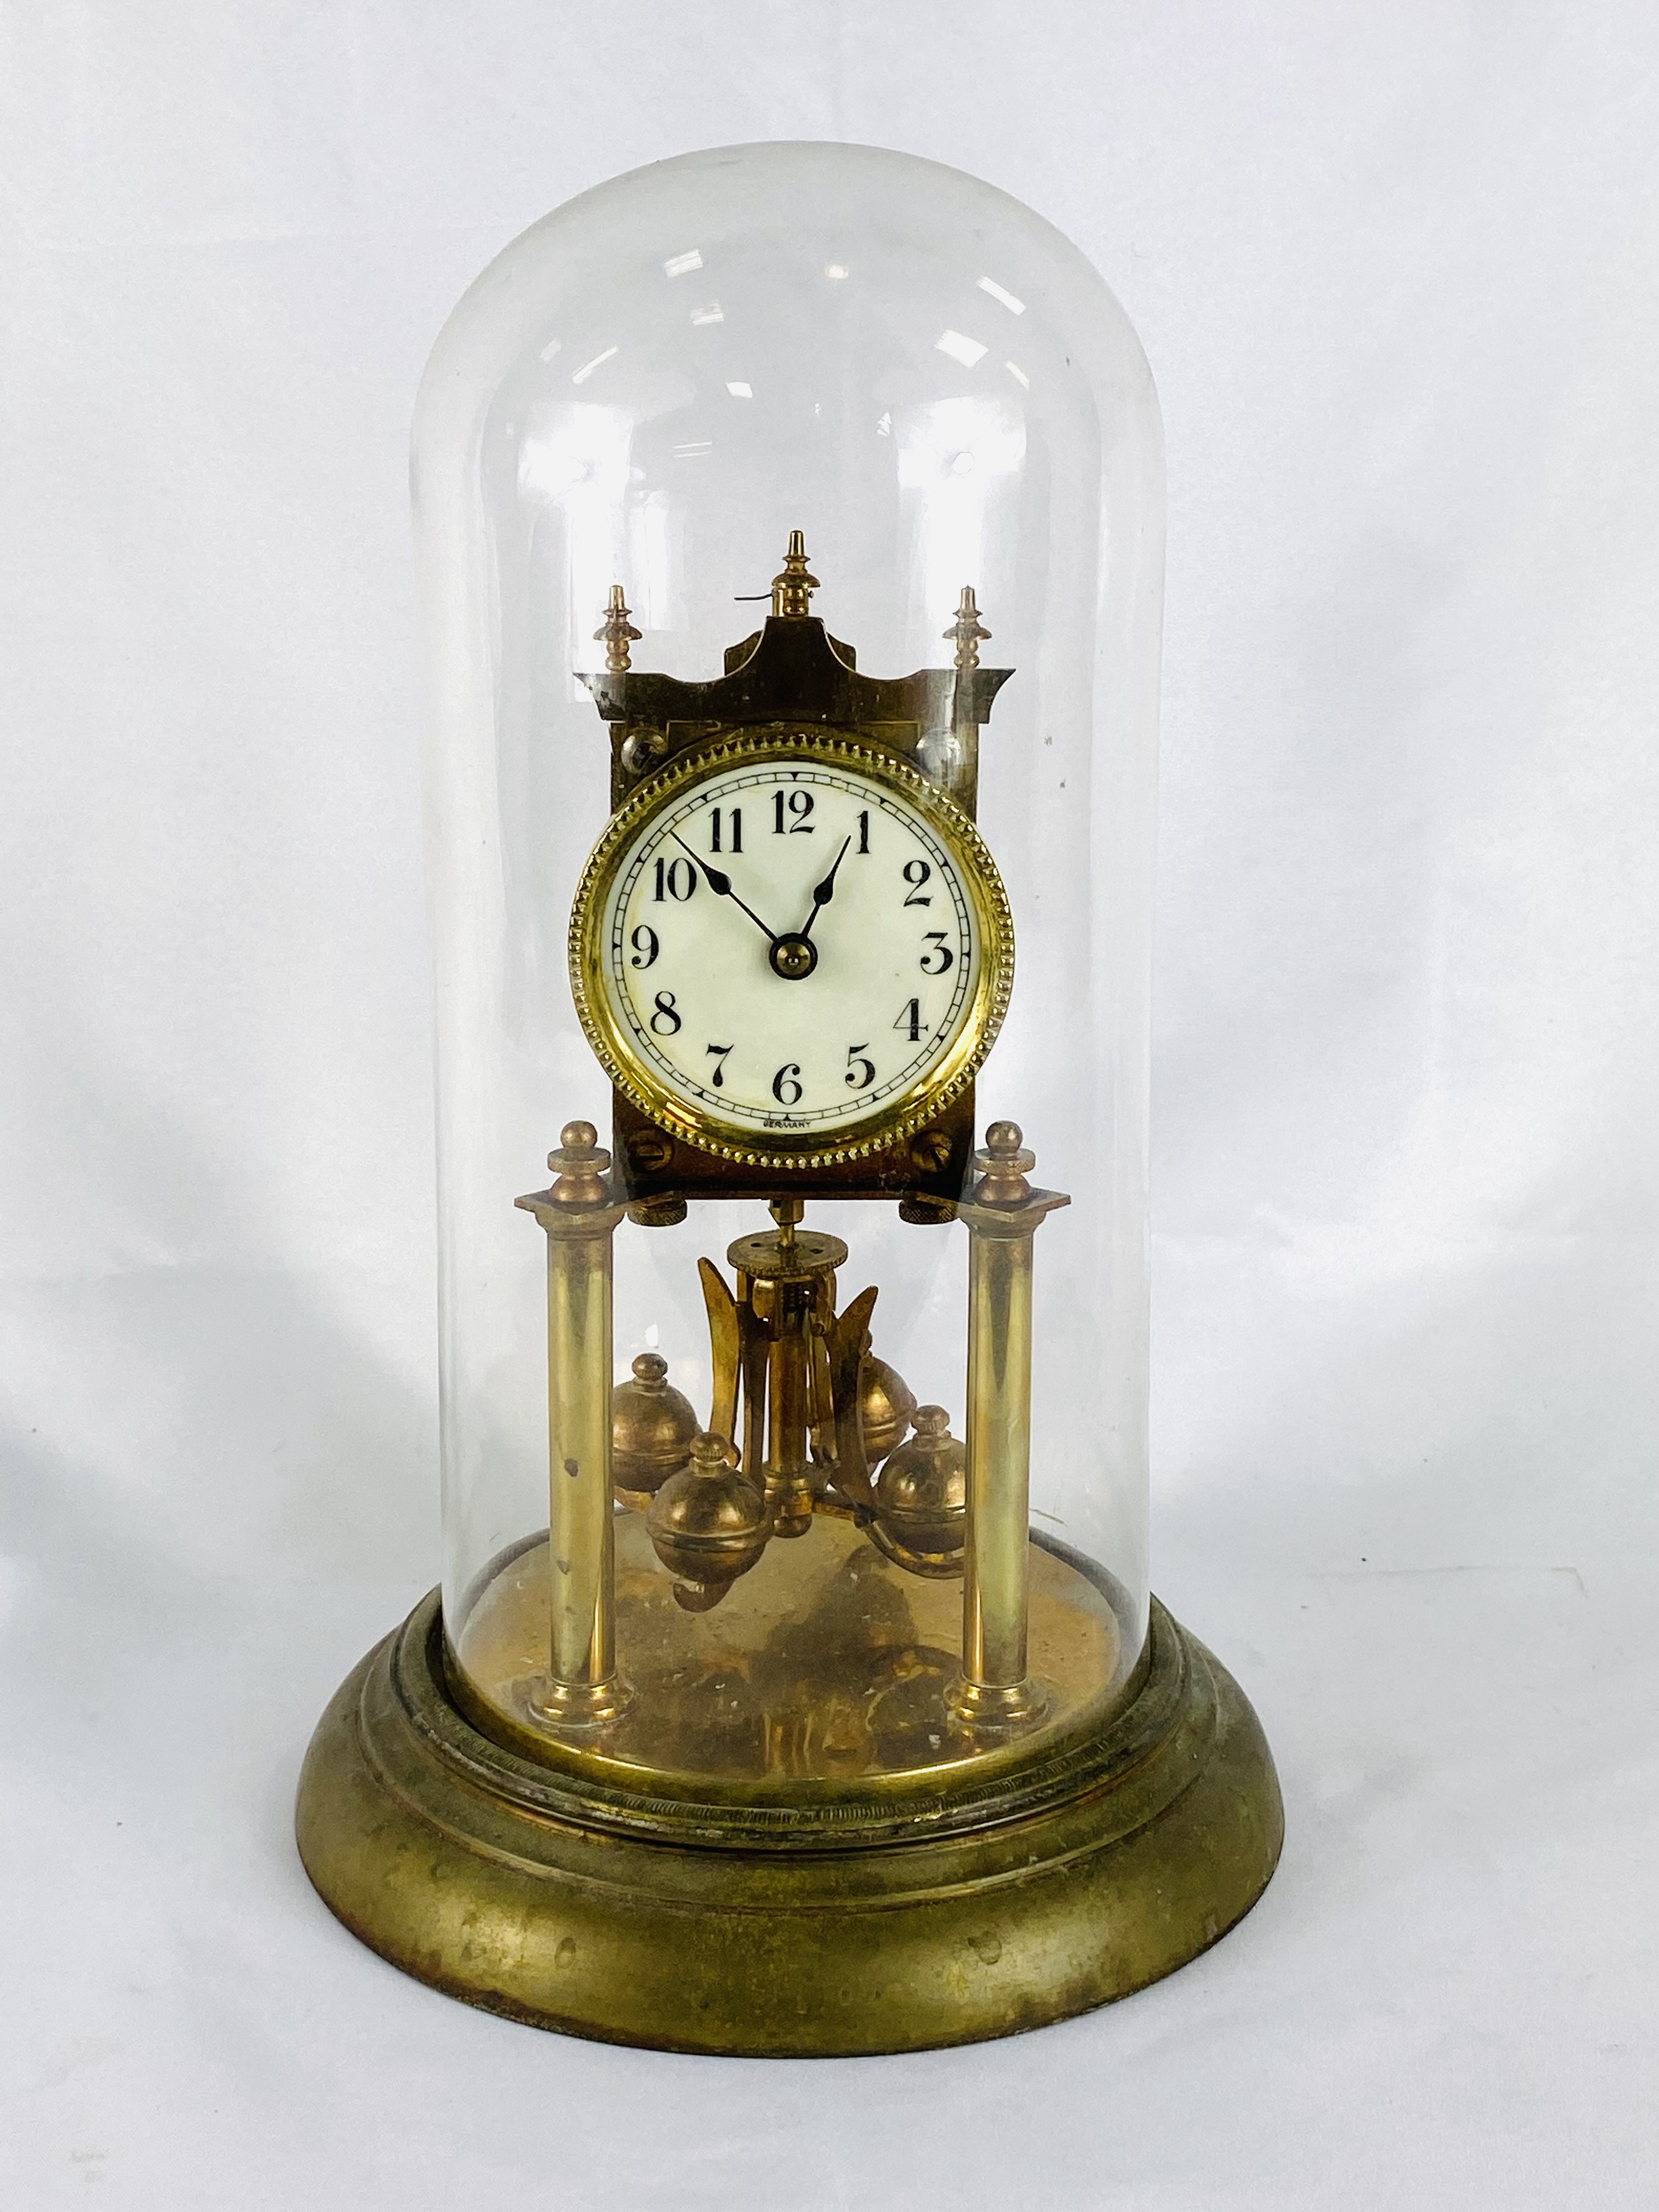 Brass anniversary clock